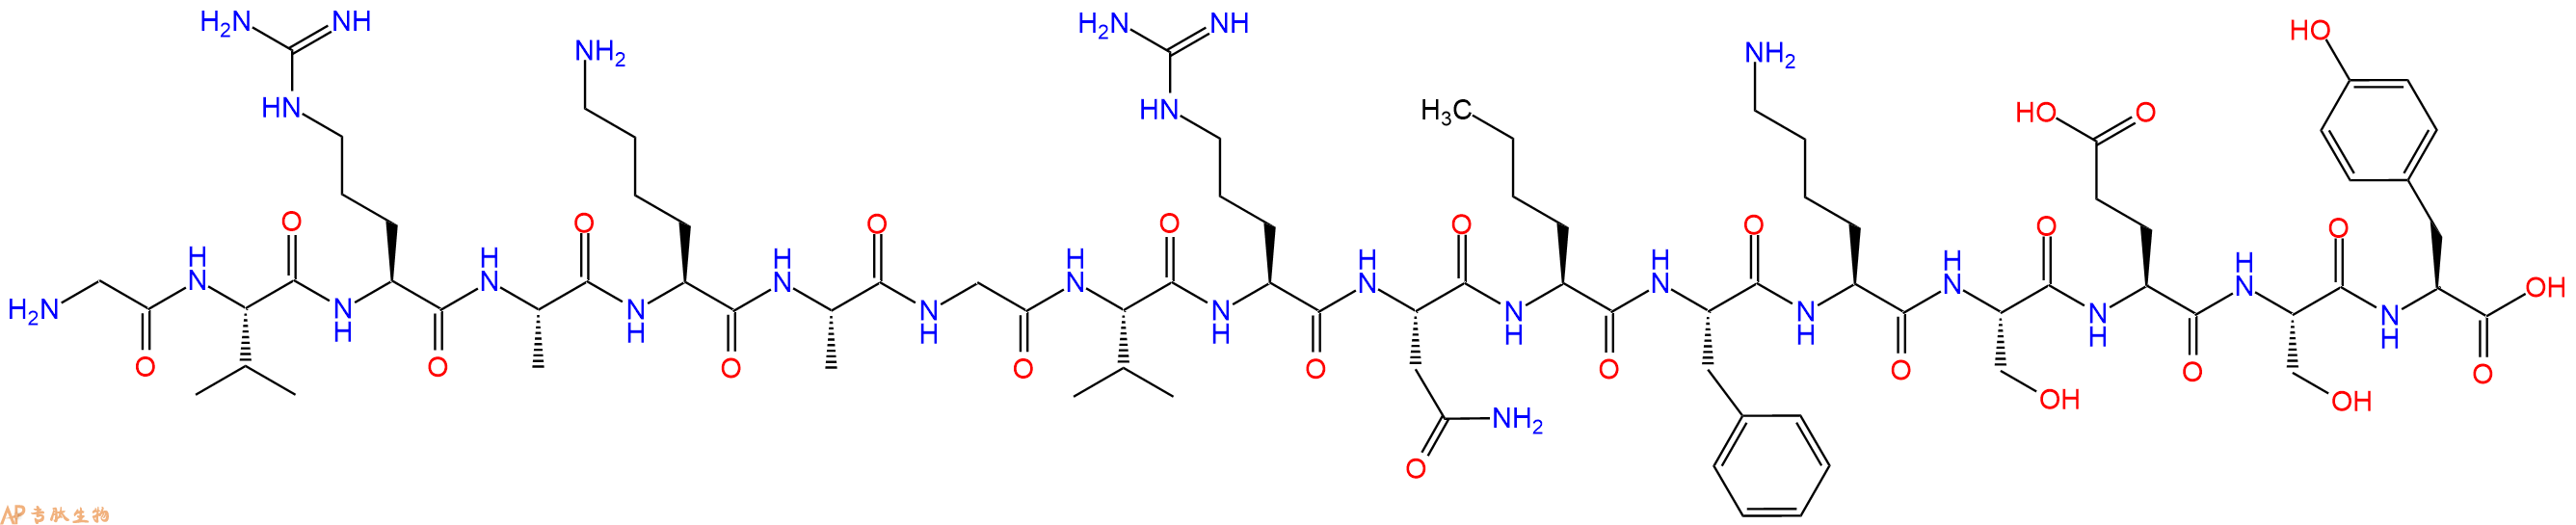 专肽生物产品十七肽GVRAKAGVRN-Nle-FKSESY